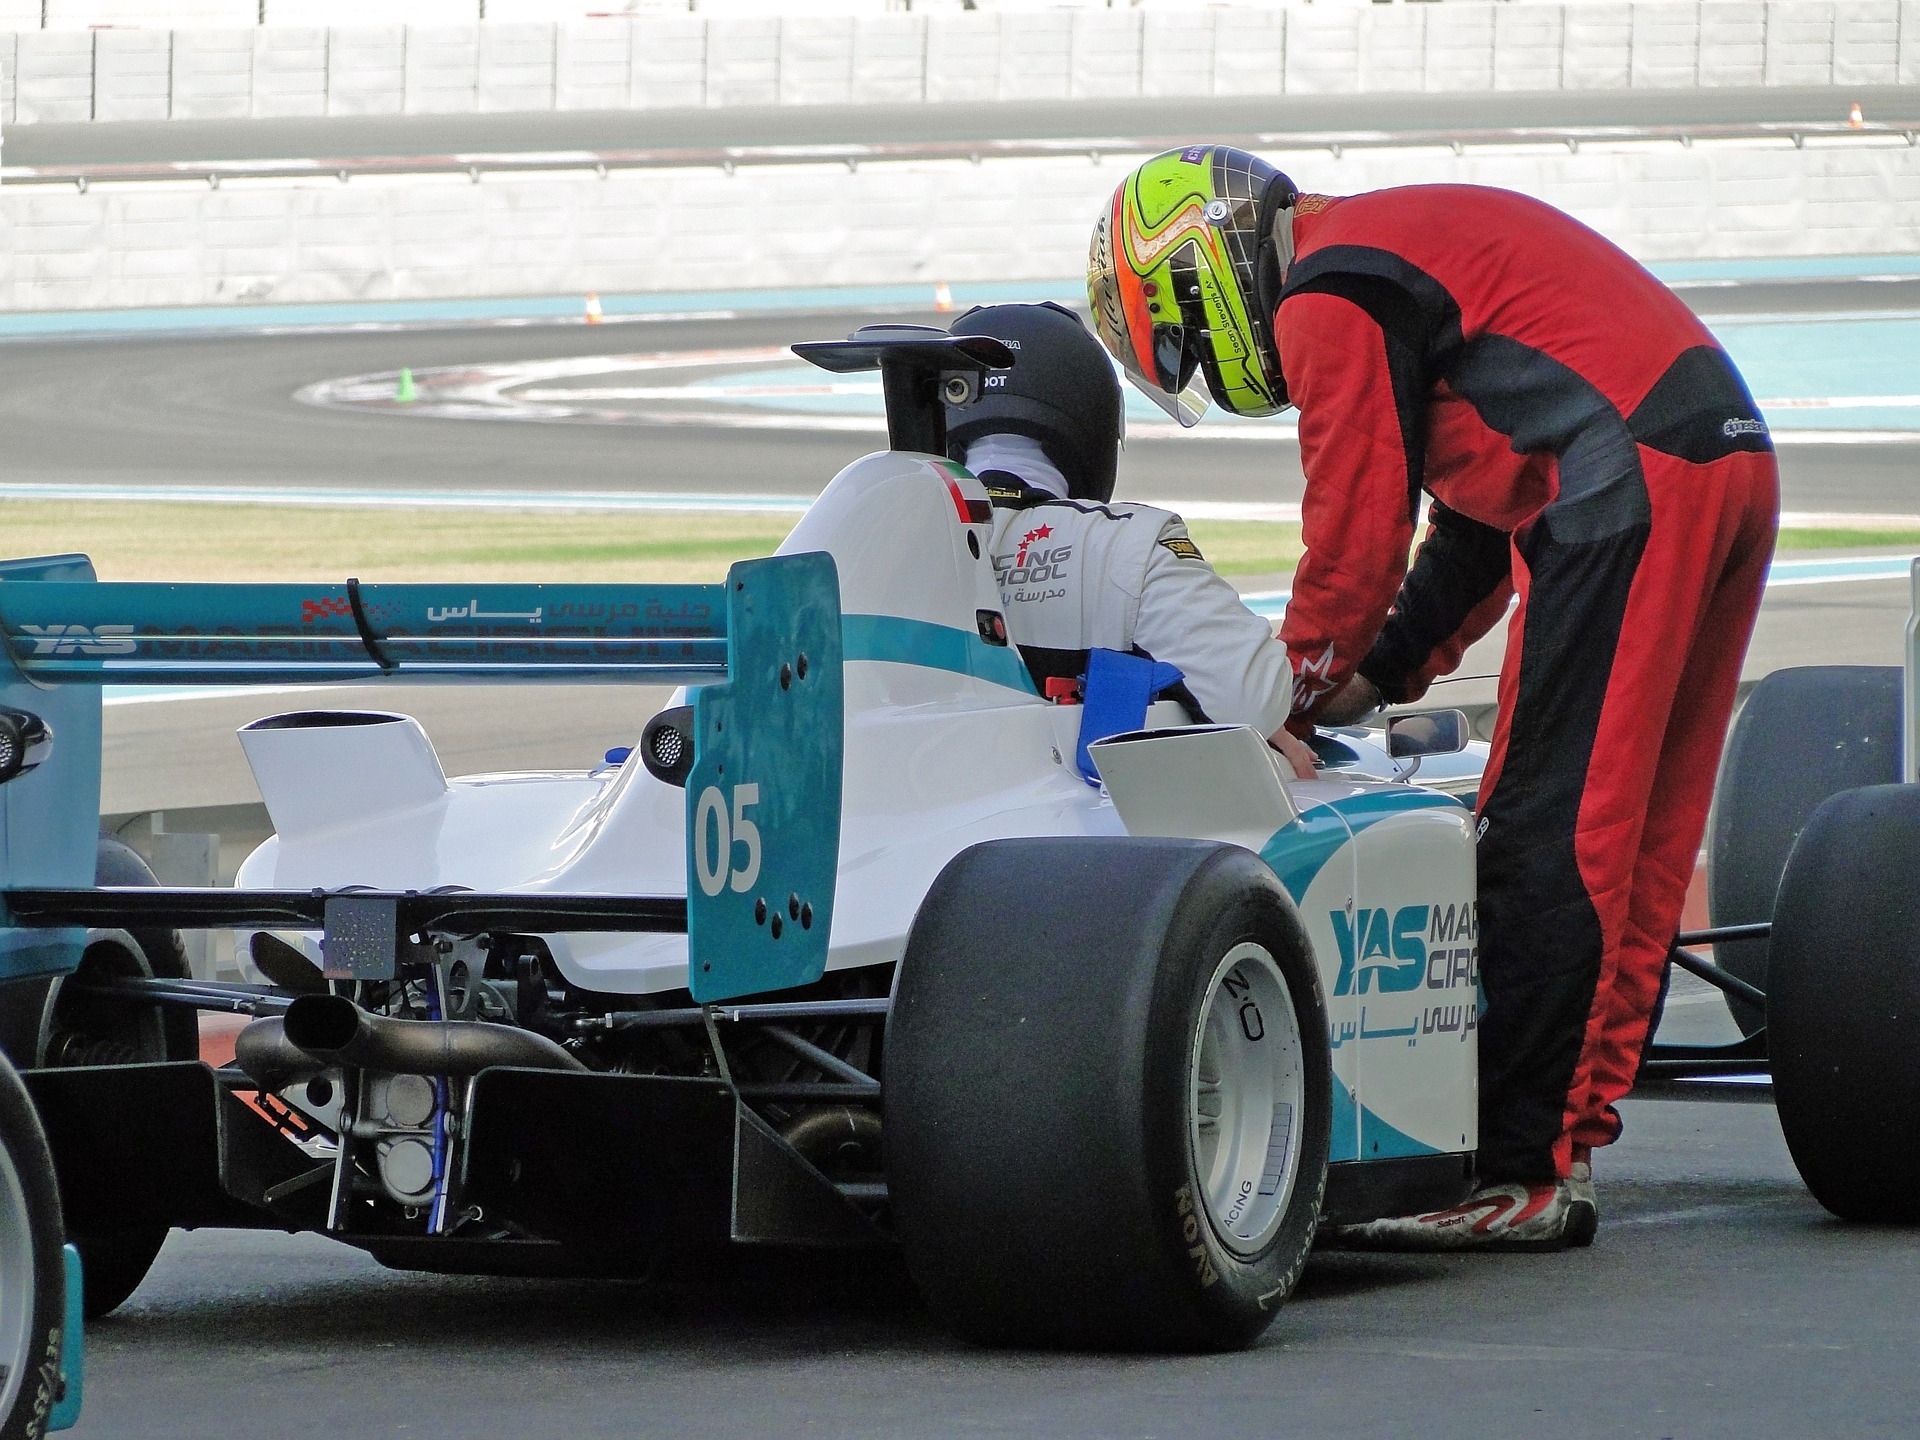 Wielkie emocje i pierwsze miejsce Verstappena w trakcie wyścigu o Grand Prix Arabii Saudyjskiej!